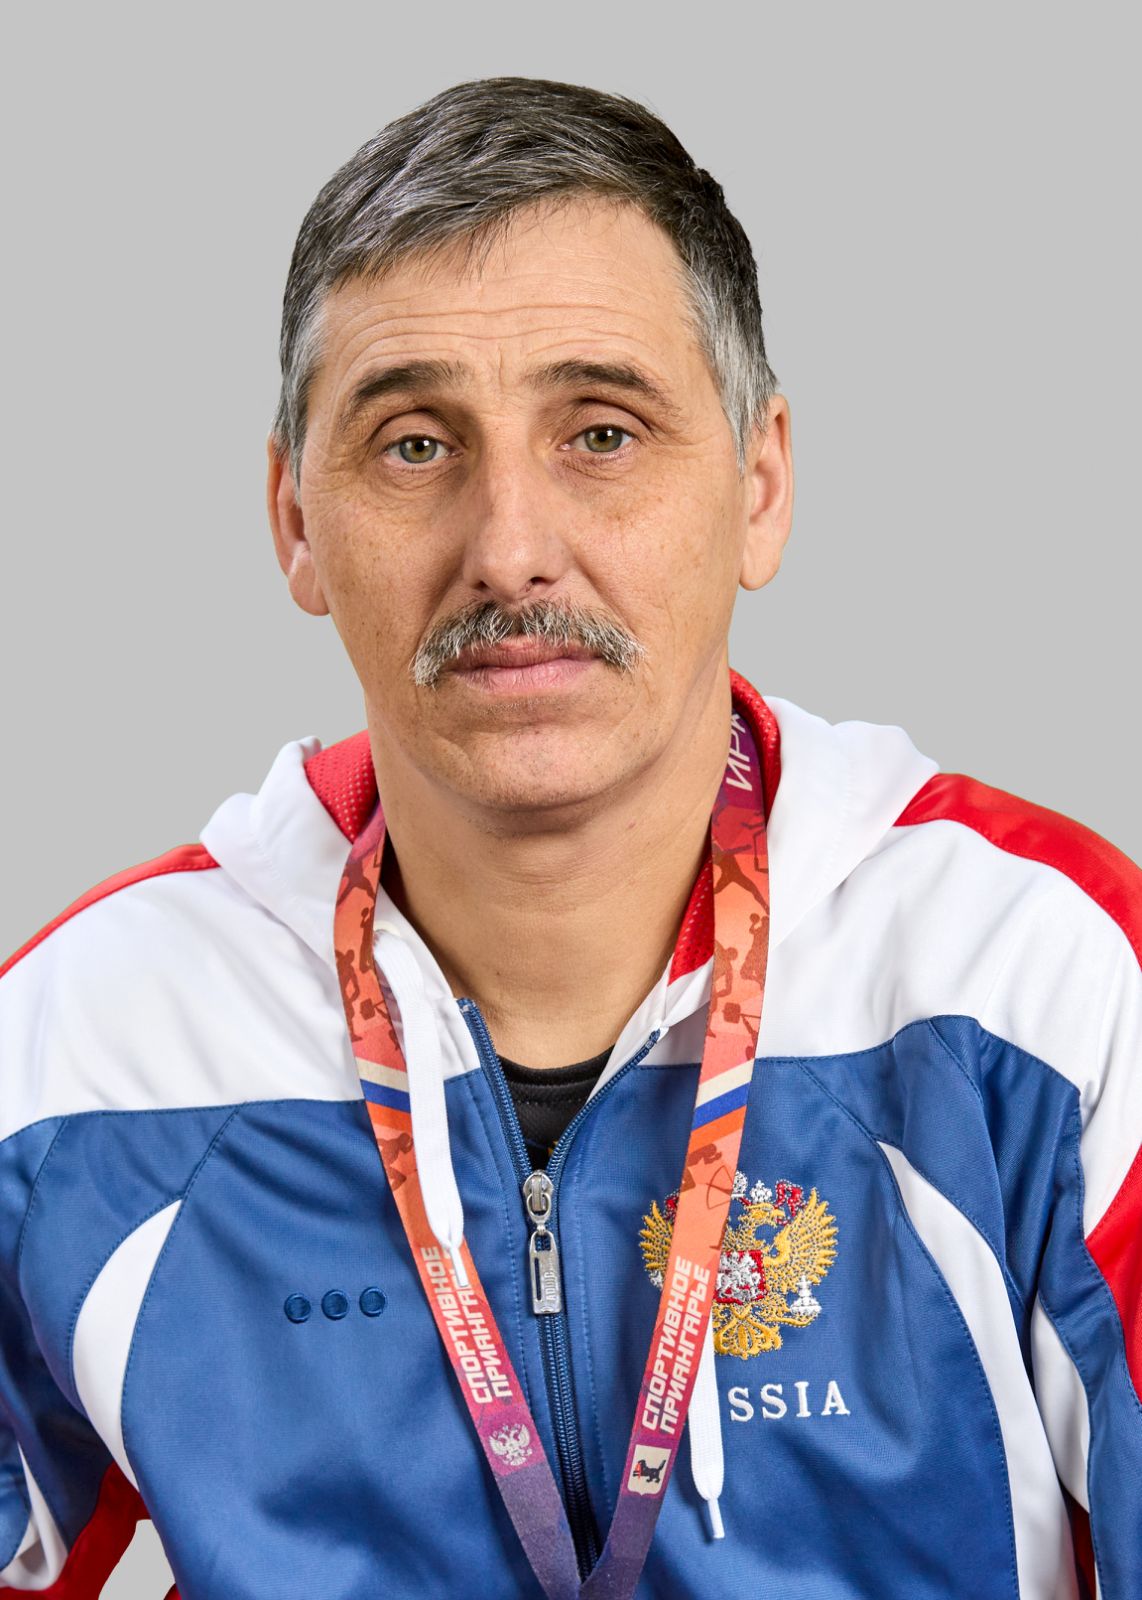 Шляхов Андрей Викторович.